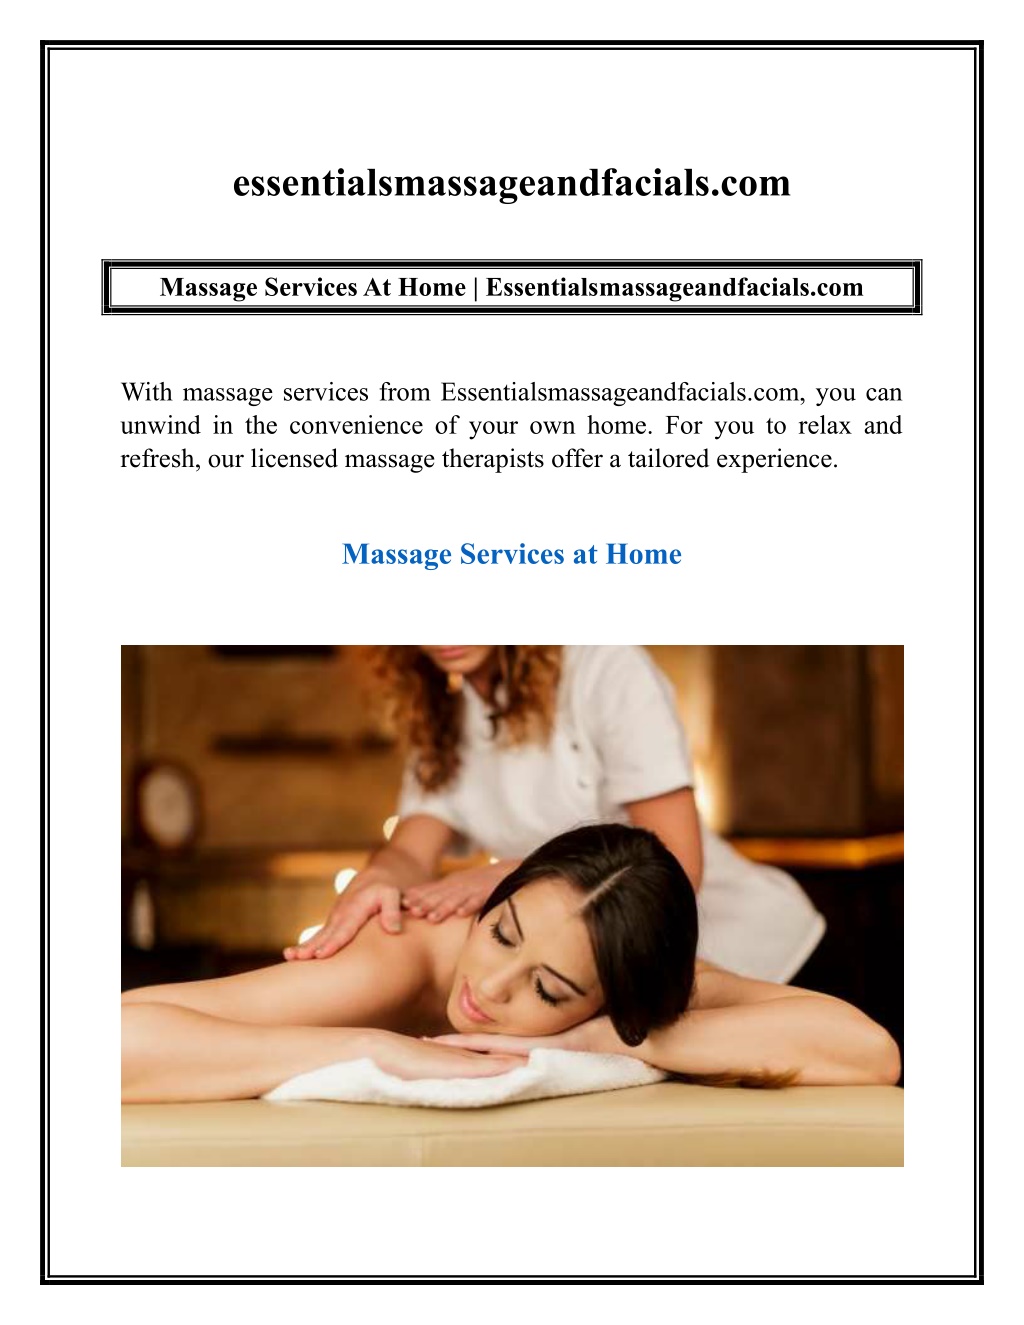 Fusion Massage - Therapeutic Massage Austin